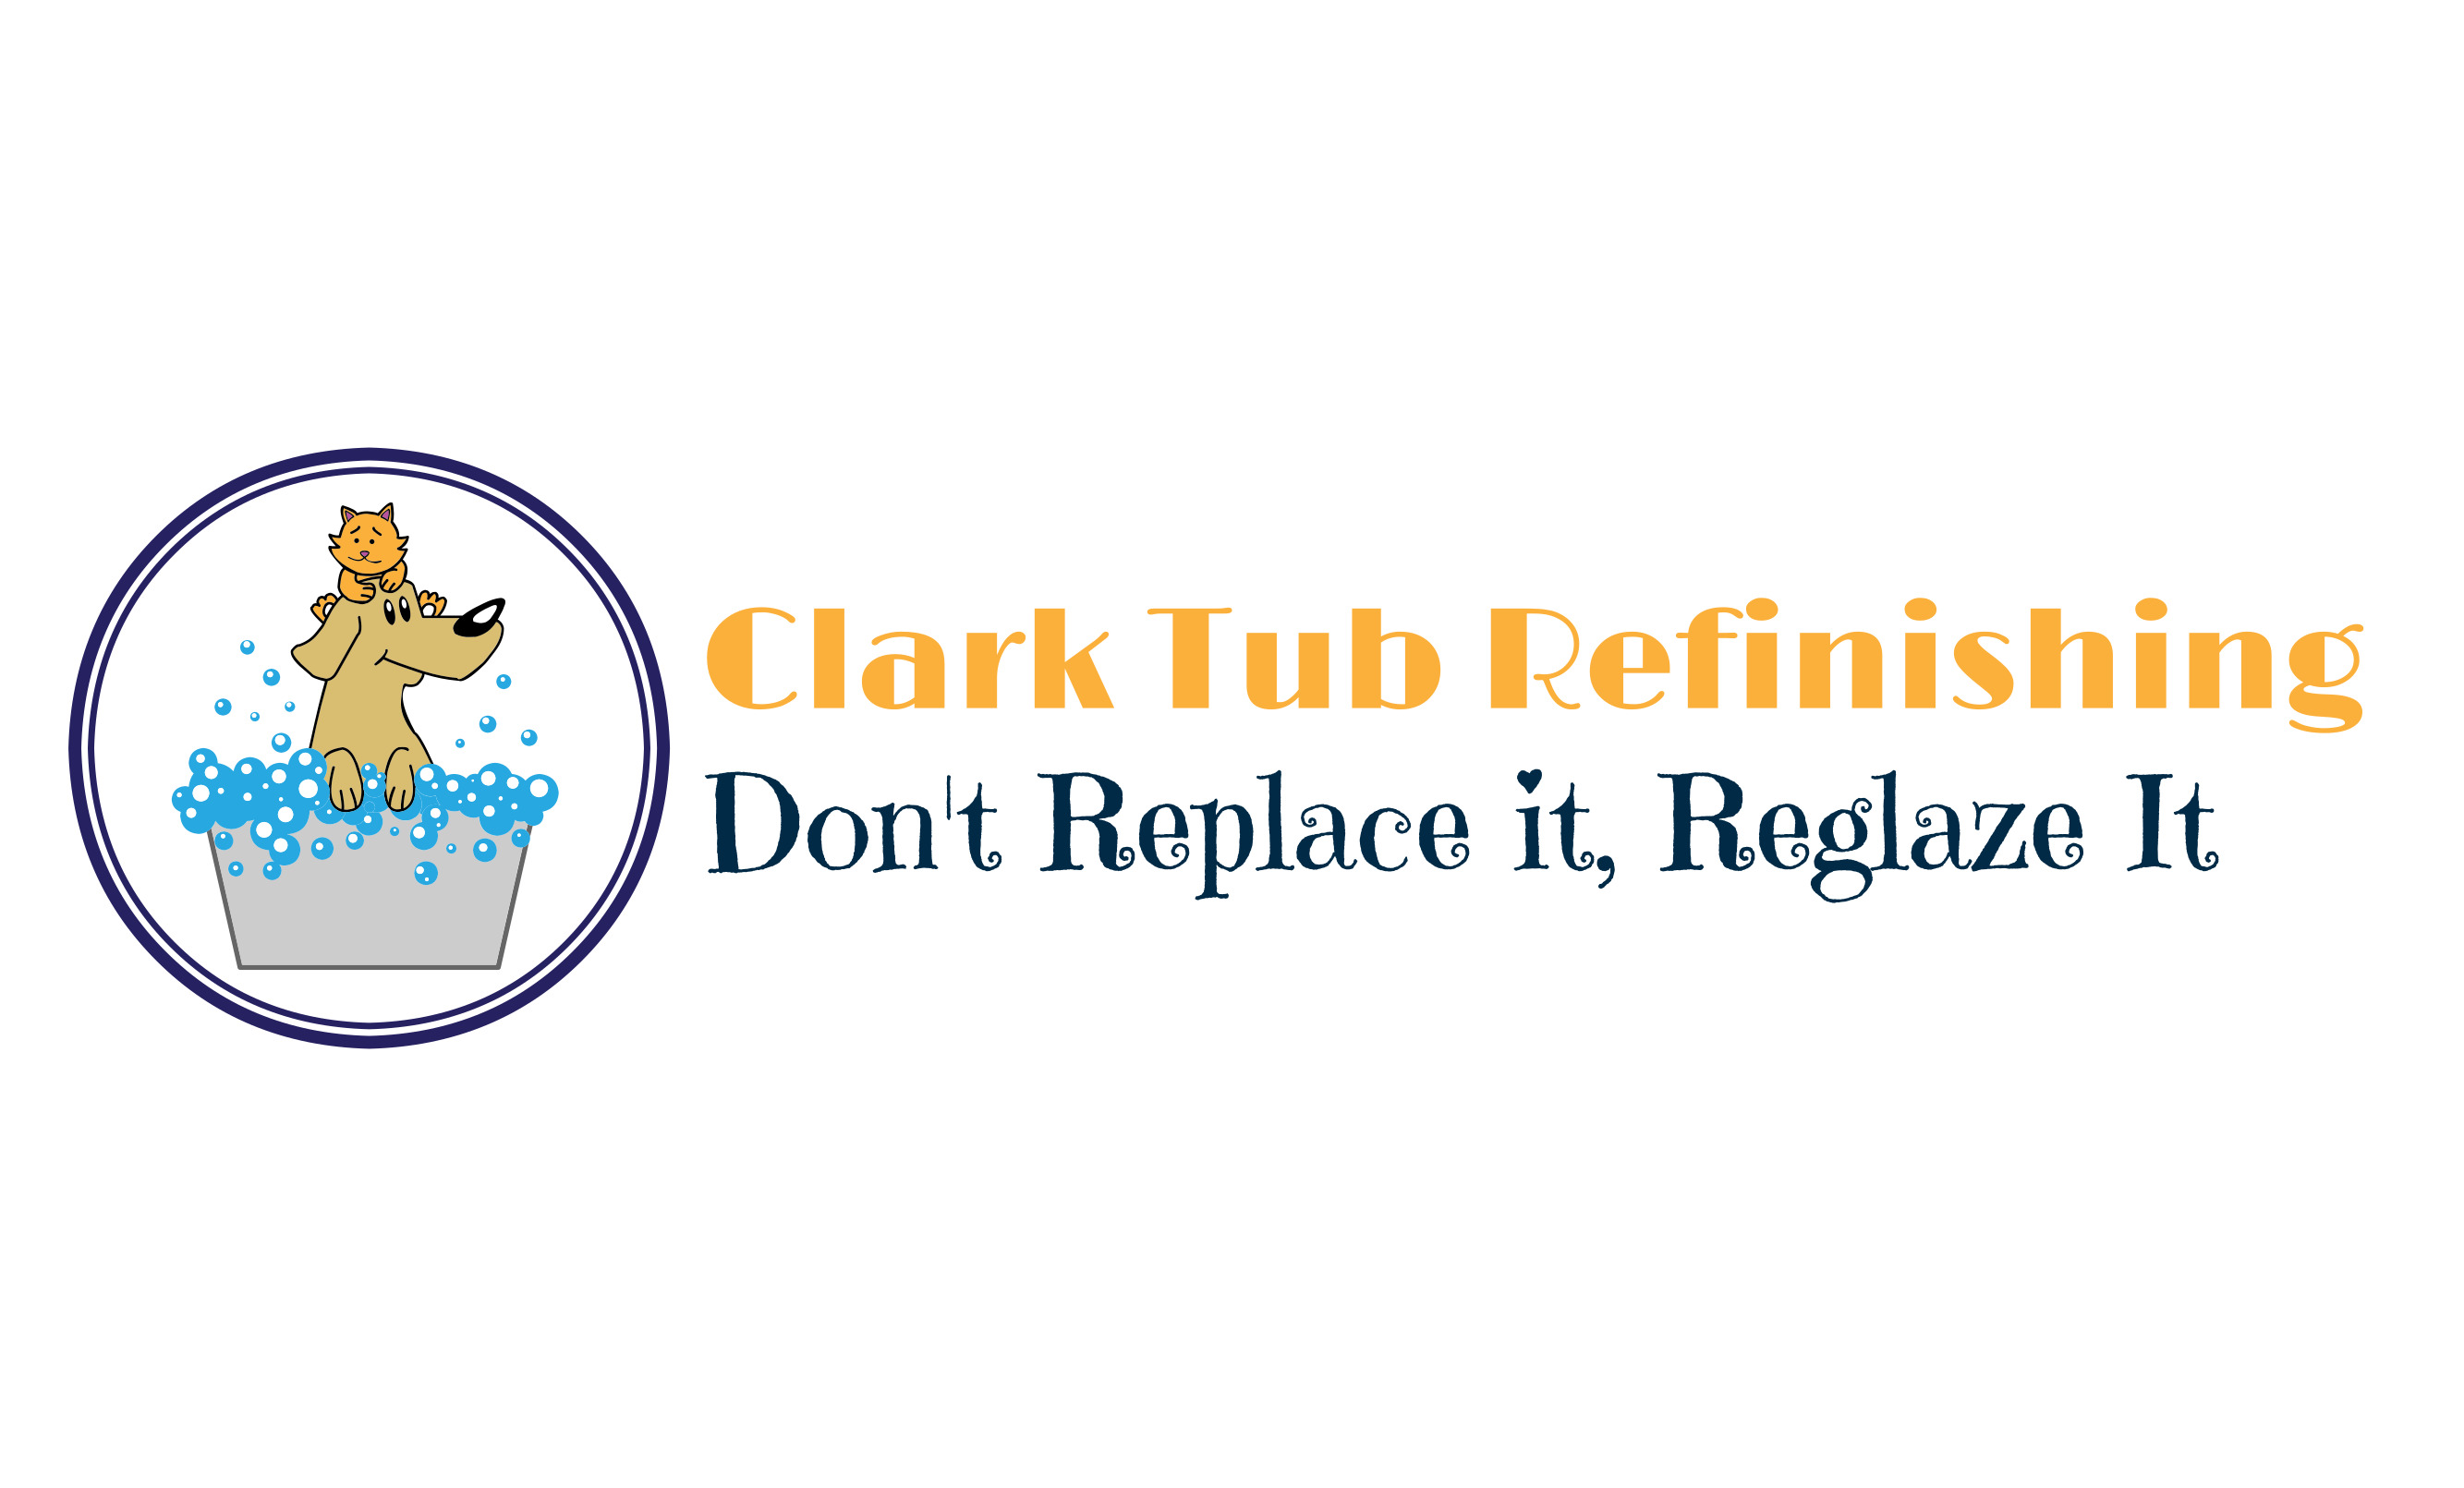 Clark Tub Refinishing Logo